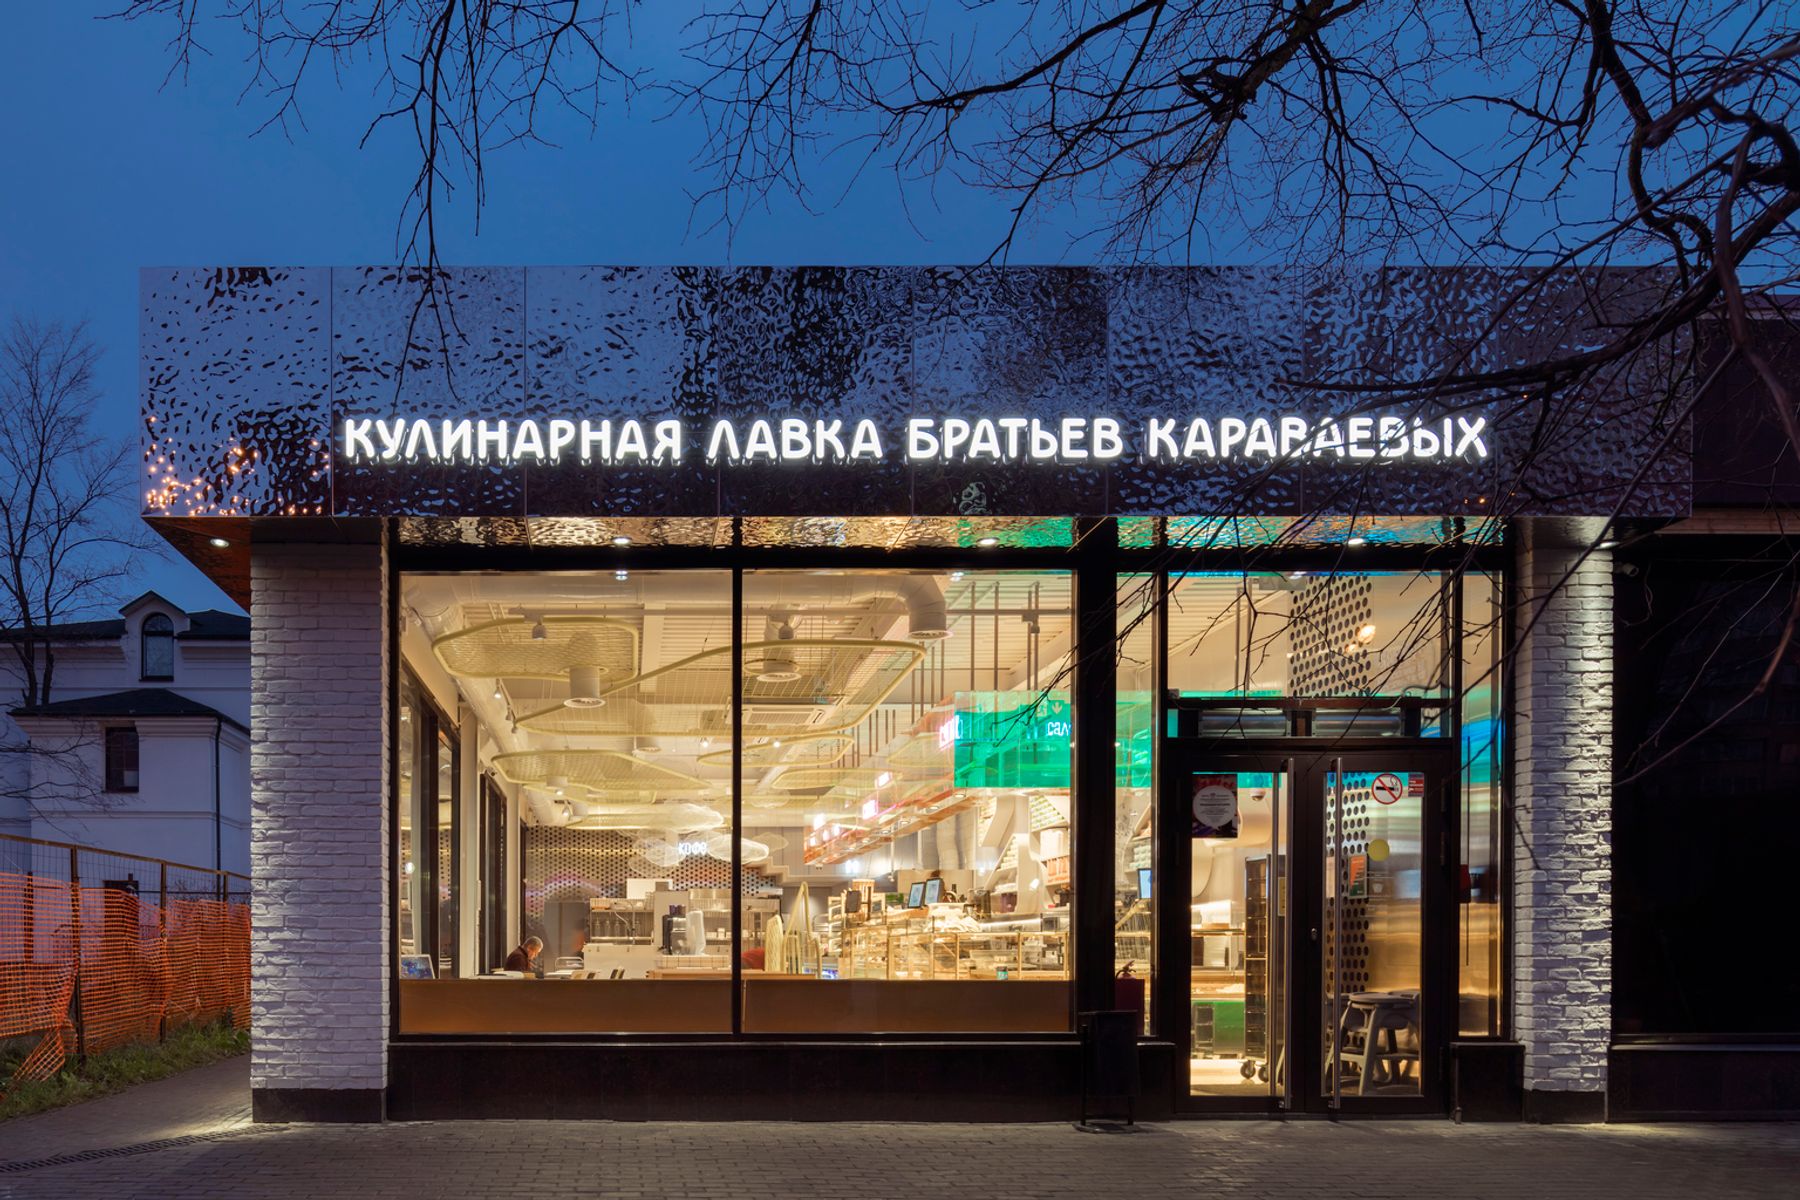 Karavaevi Brothers Cafe – Krzhizhanovskogo, Moskau. Architektur und Lichtplanung: V12 Architects / Vvgeniy Shchetinkin, Lleeza Semionova, Moskau. Fotografie: D. Chebanenko.